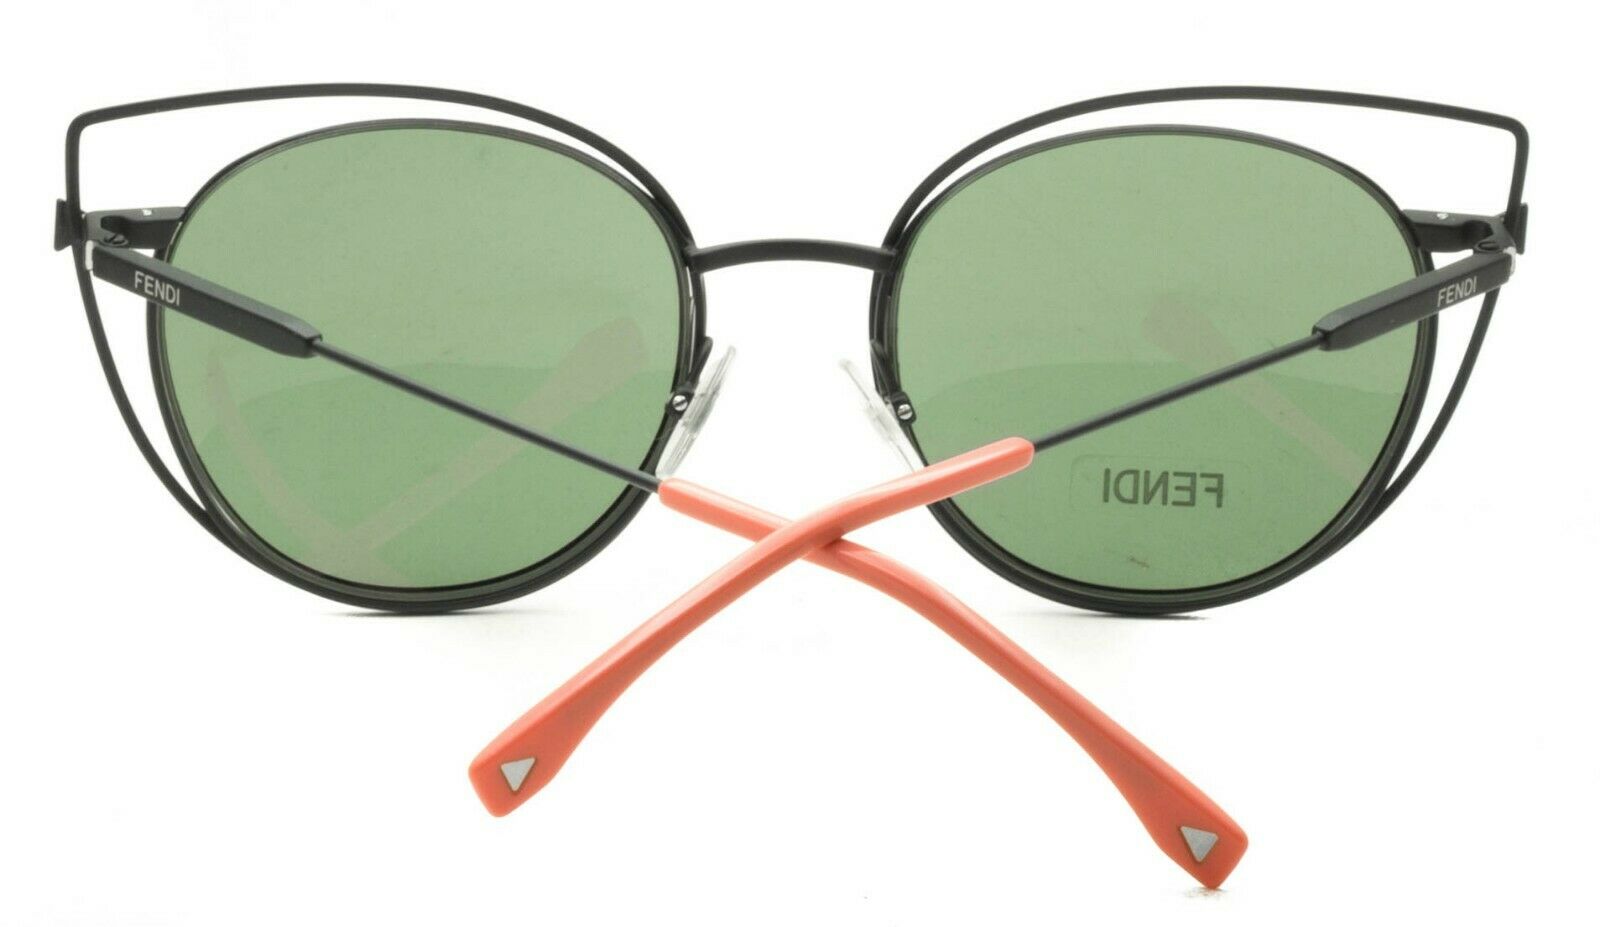 Sunglasses Fendi, Style code: ff0117s-laqut-N33